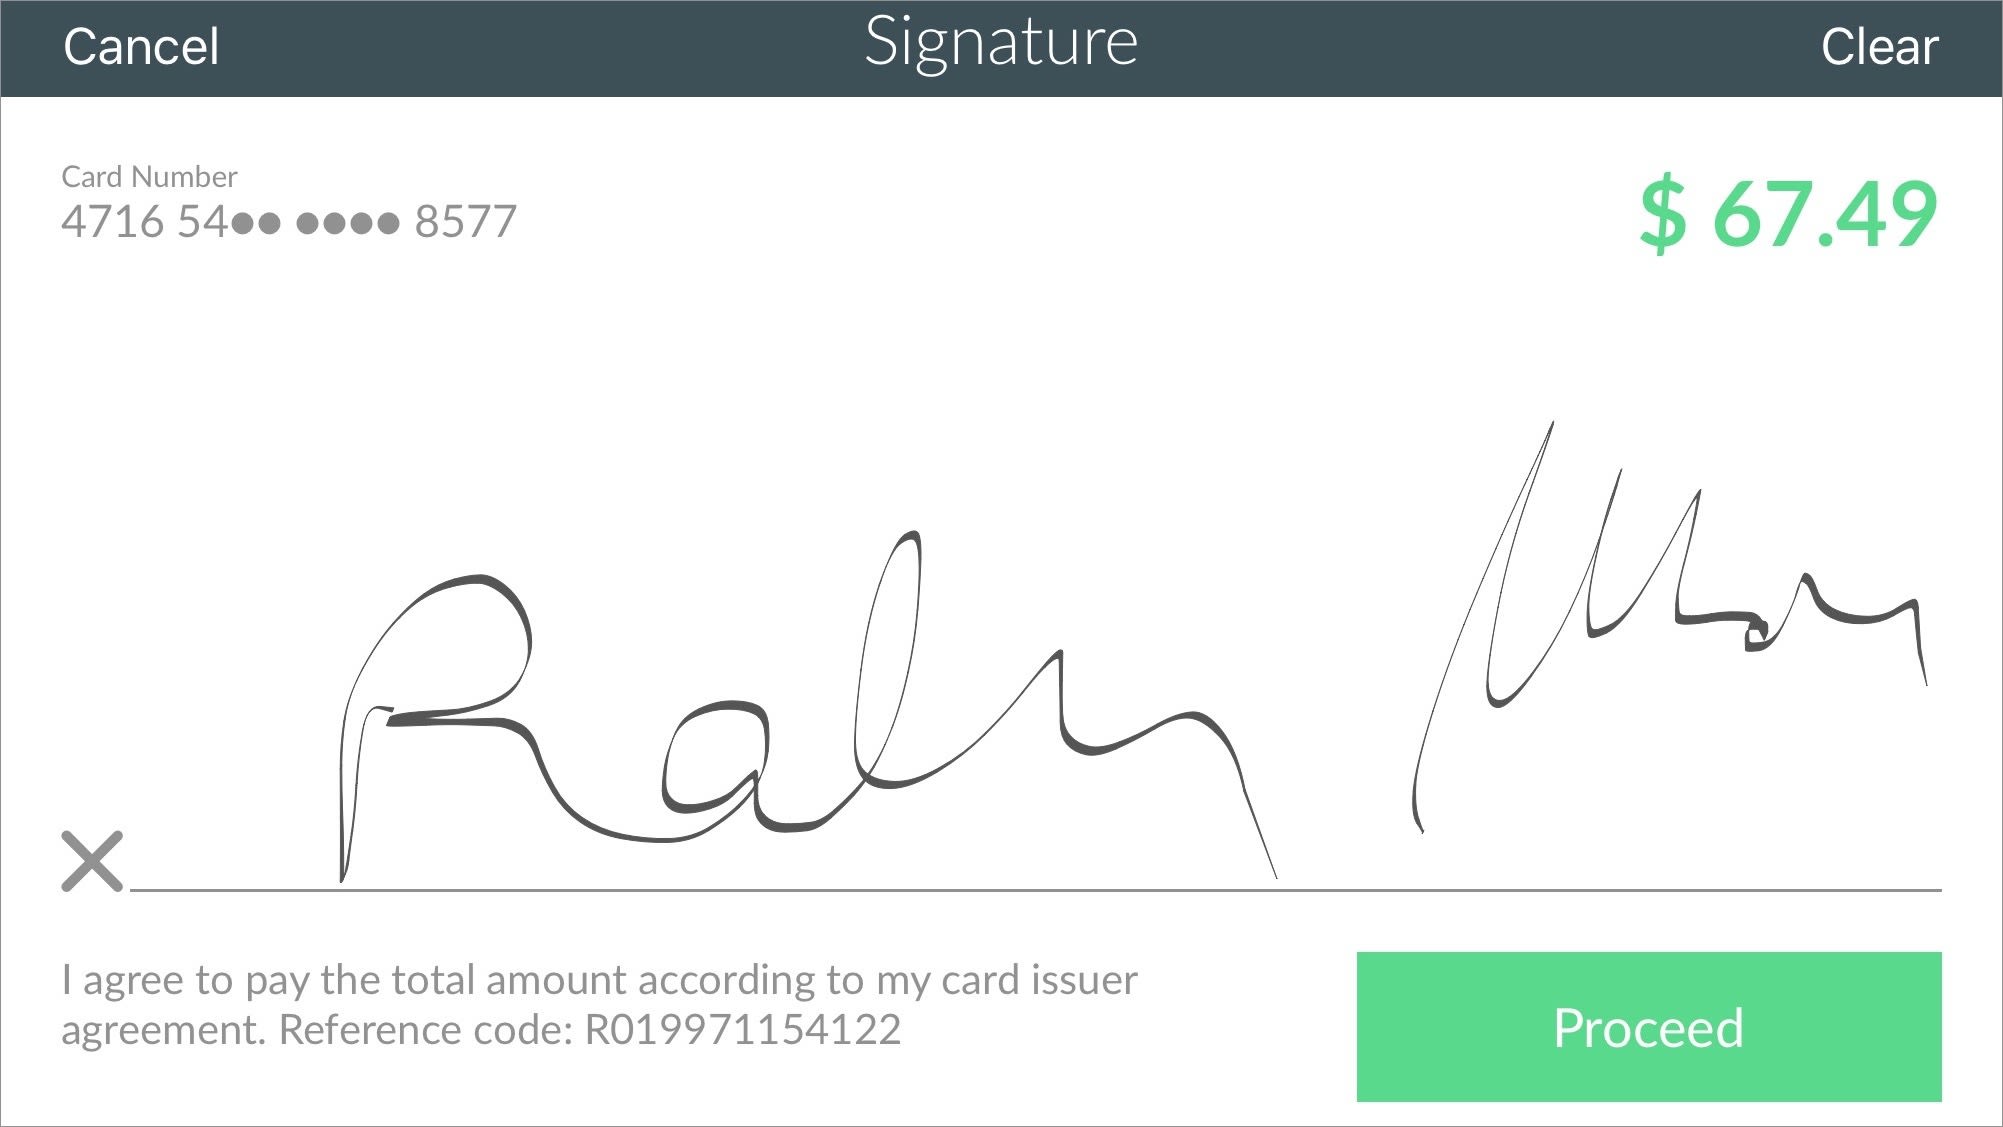 CardPointe signature capture